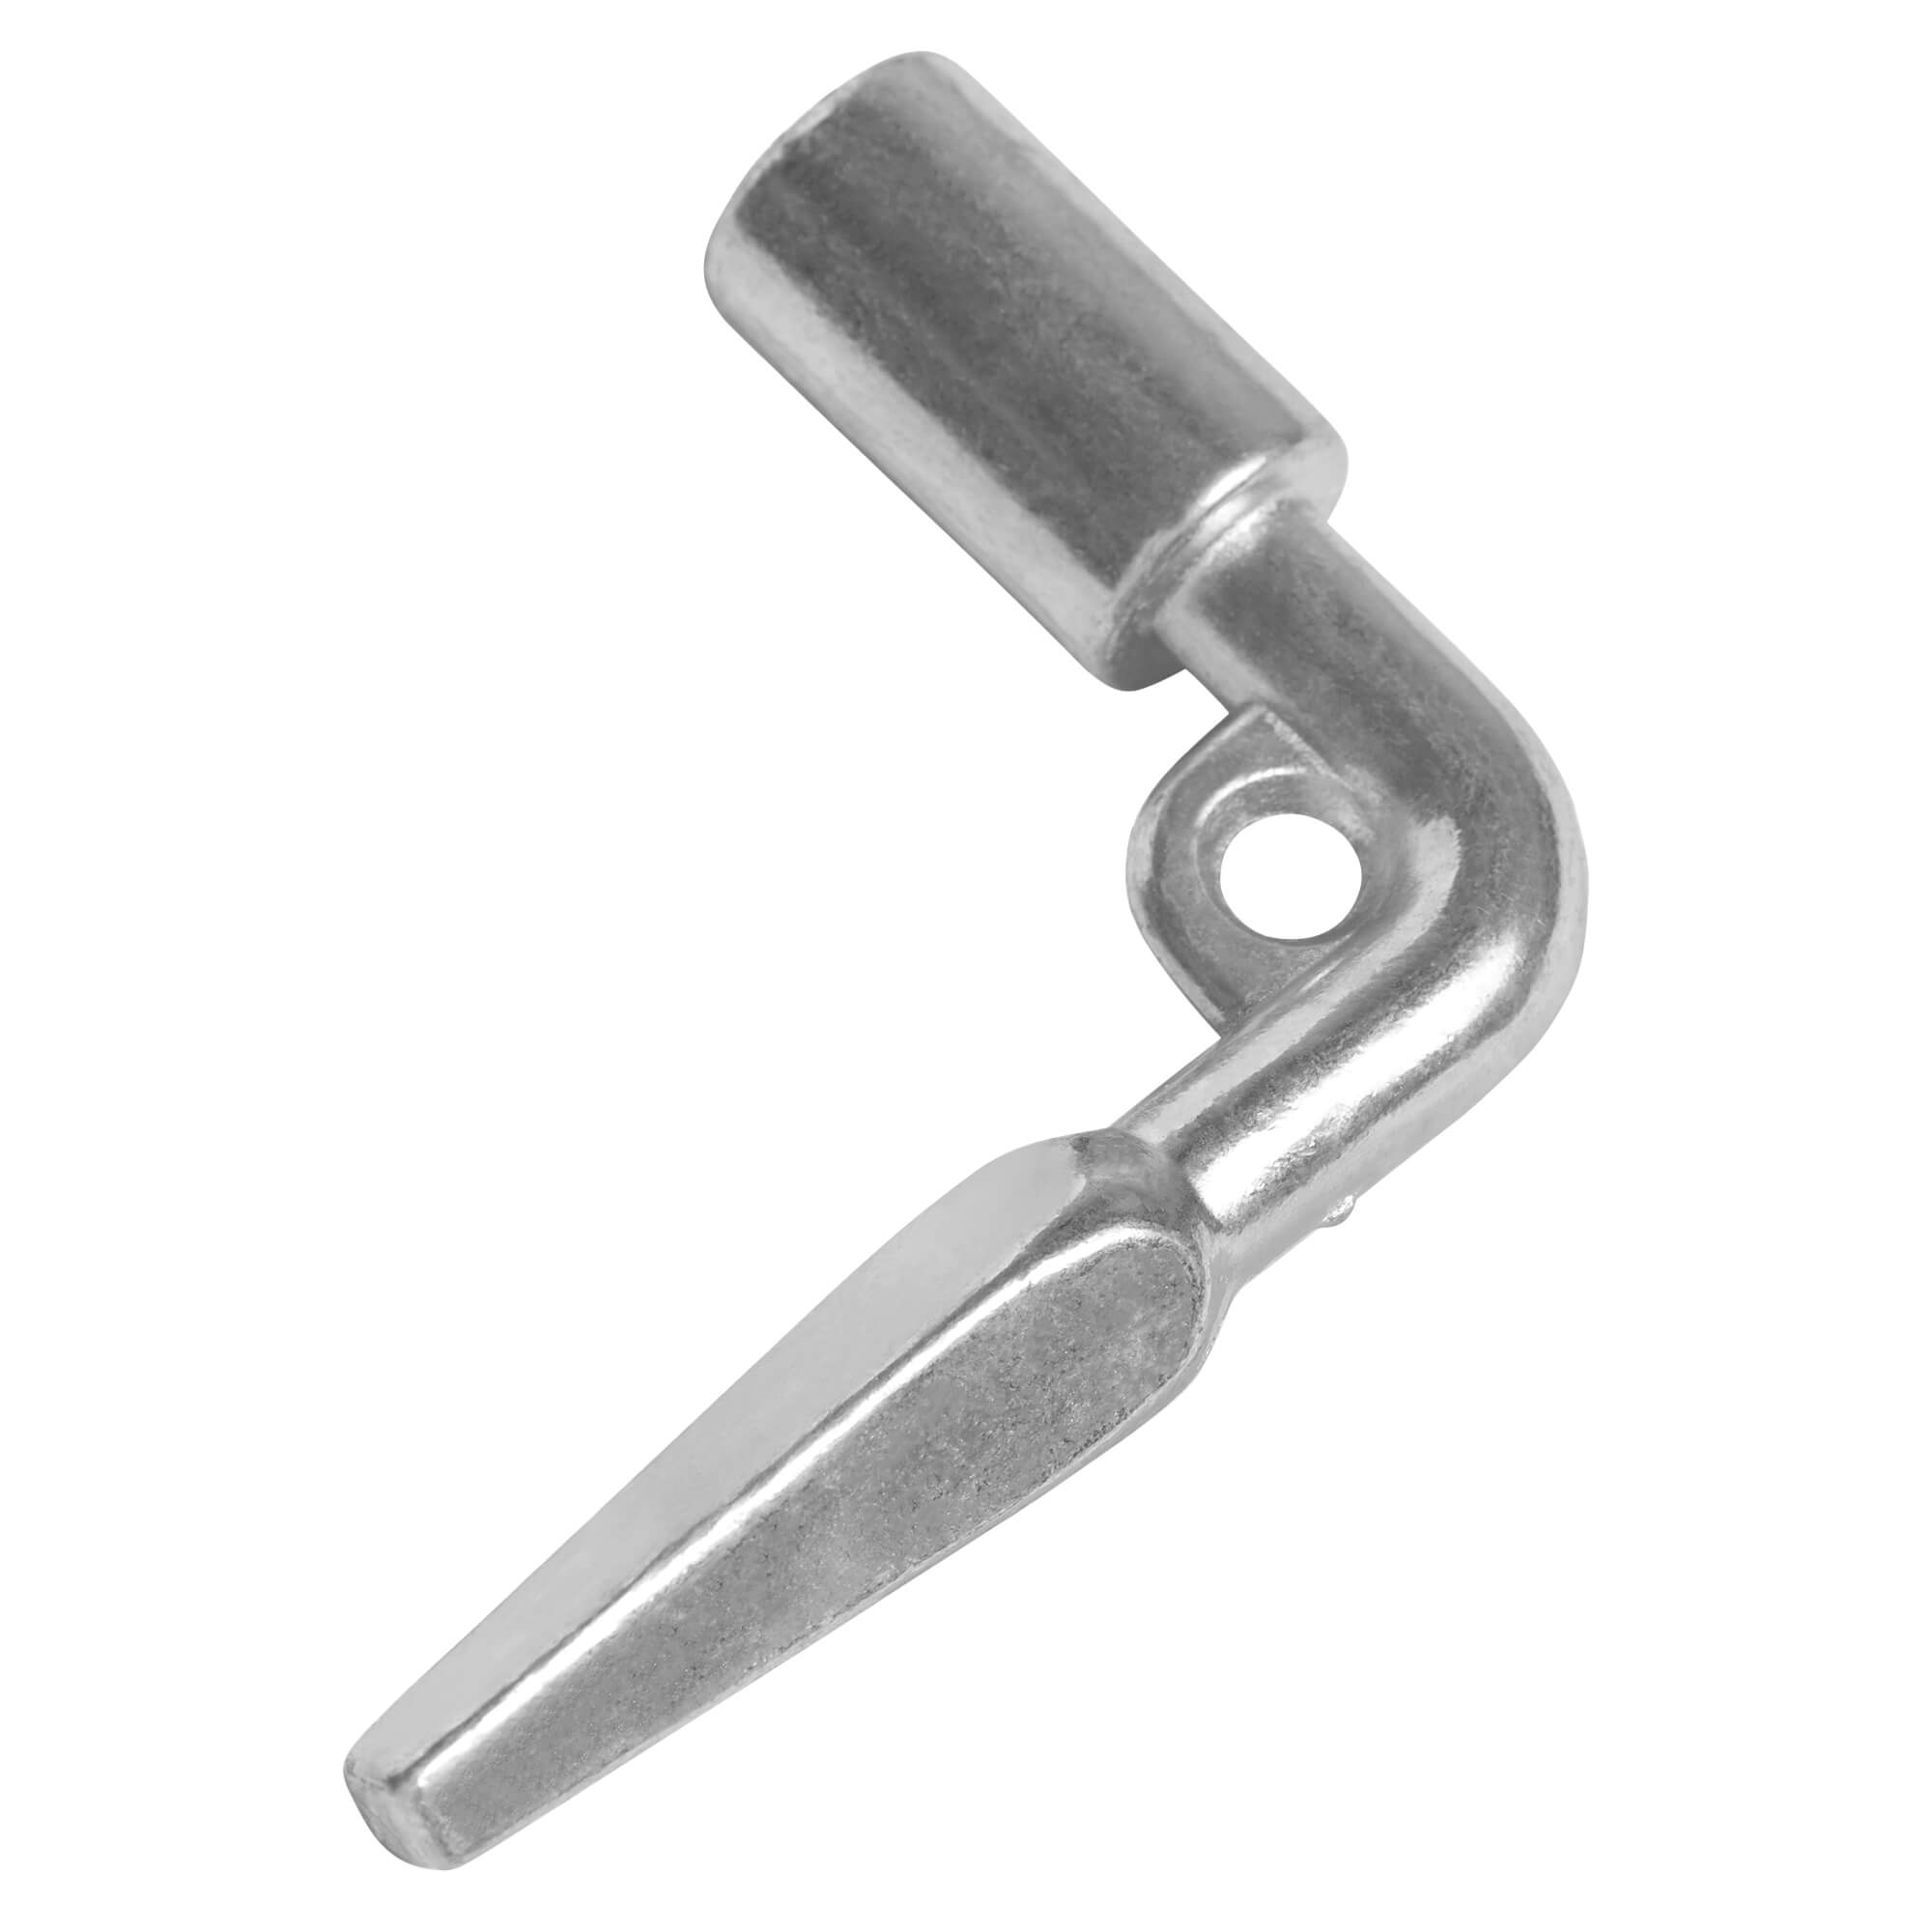 Fyrkantnyckel (vinklad spik) (1 st) Spiknyckel Nybyggnadsnyckel Arkitektnyckel Utvändigt (5-10mm koniskt) Fyrkantigt hål 8mm Fyrkantnyckel Invändig fyrkantnyckel 8mm